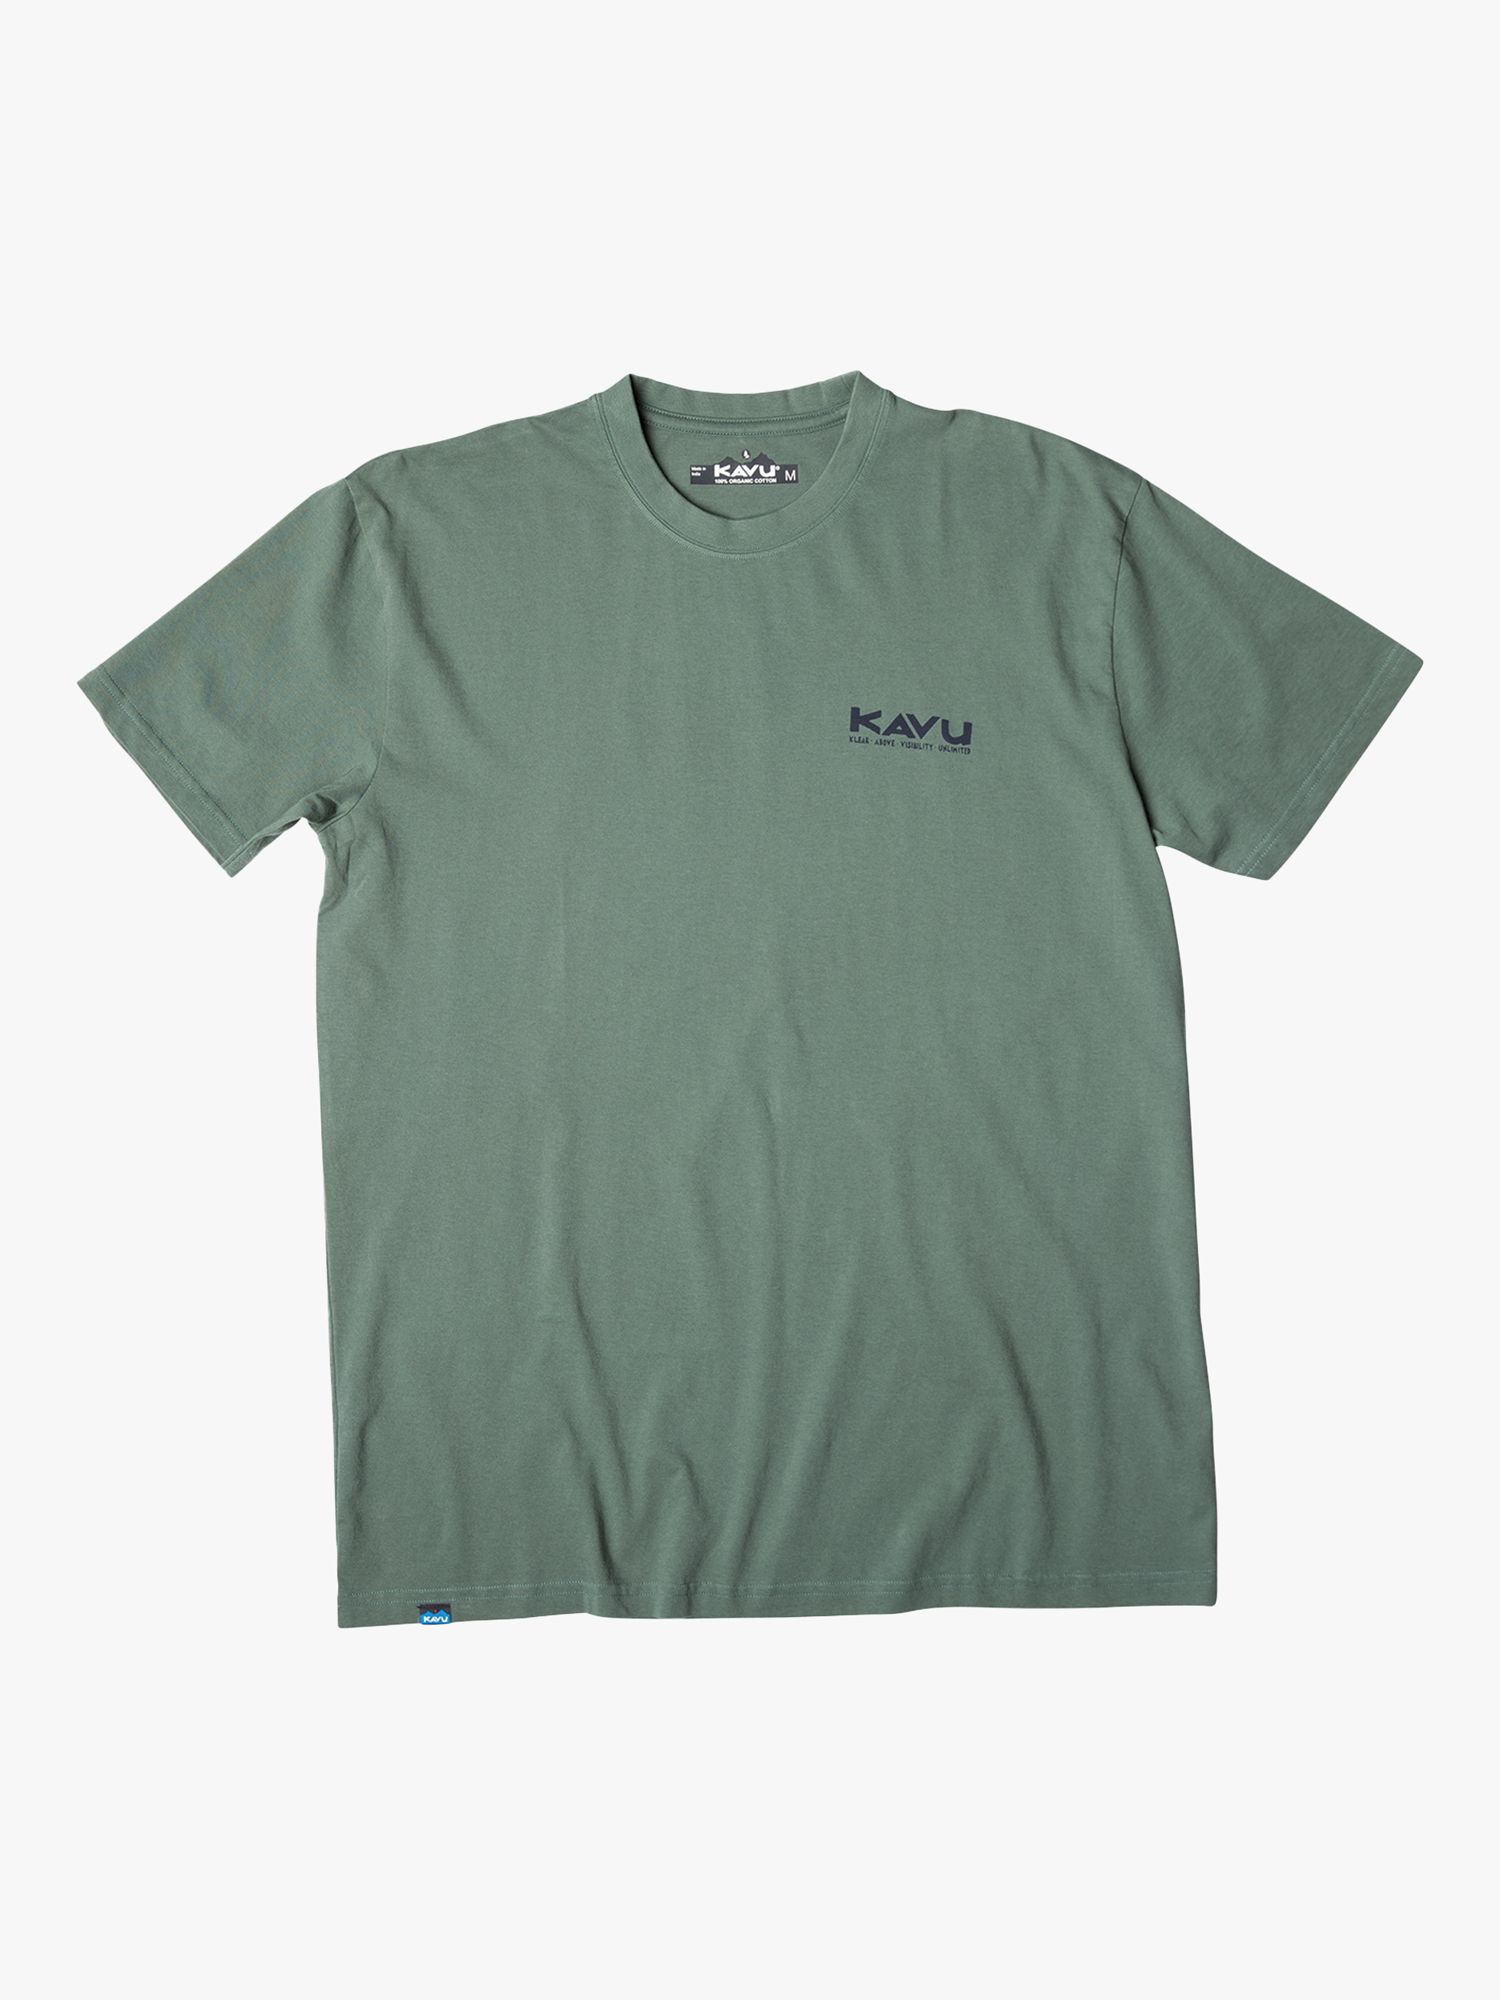 KAVU Get It Short Sleeve T-Shirt, Green, S